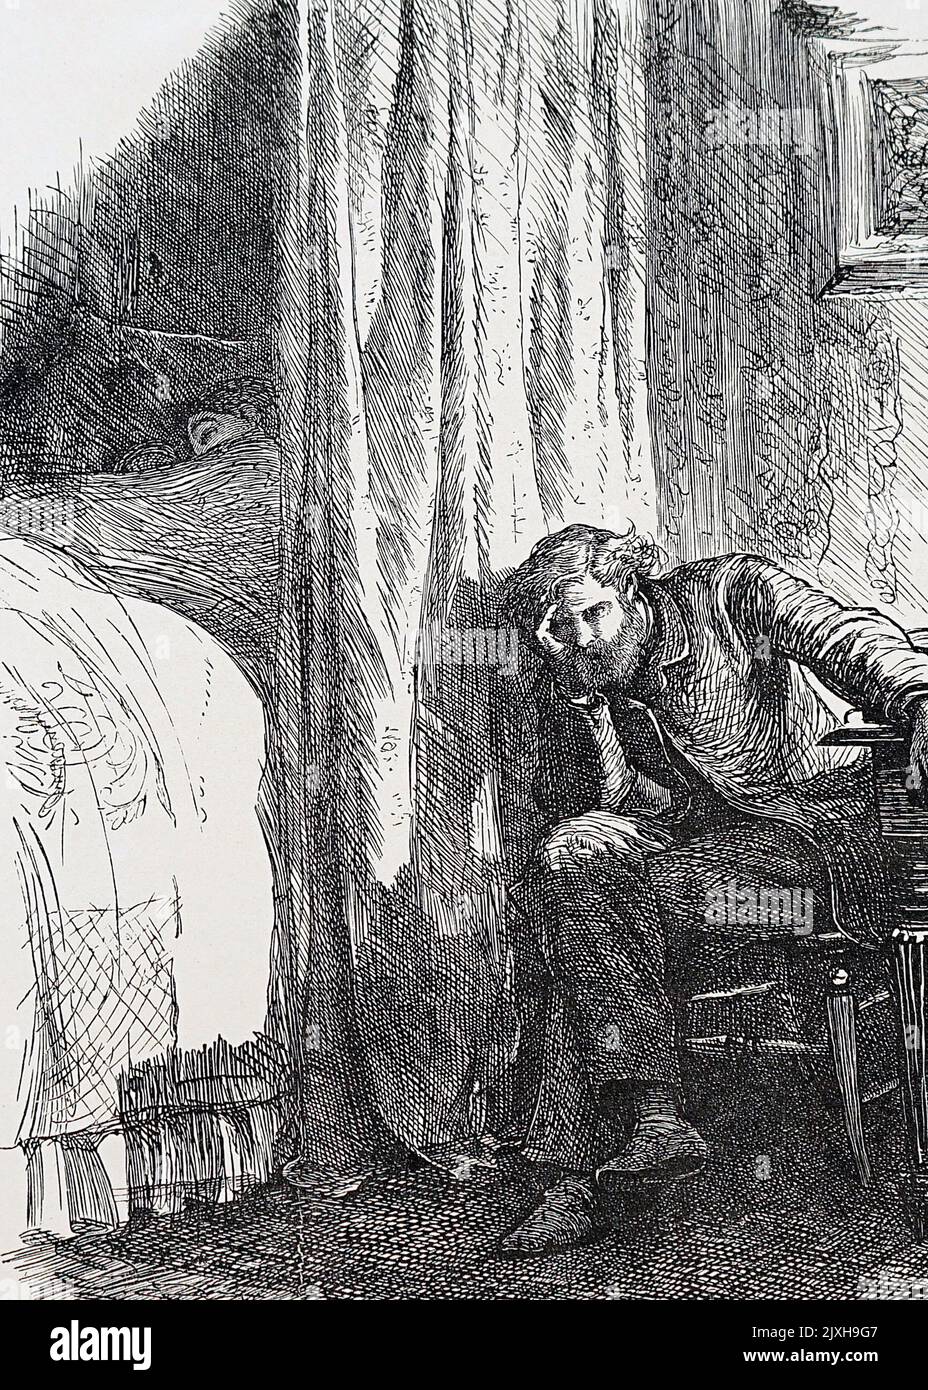 Illustration représentant un homme en détresse sur ses finances. Illustré par Frederick Walker (1840-1875), peintre et illustrateur social réaliste anglais. Daté du 19th siècle Banque D'Images